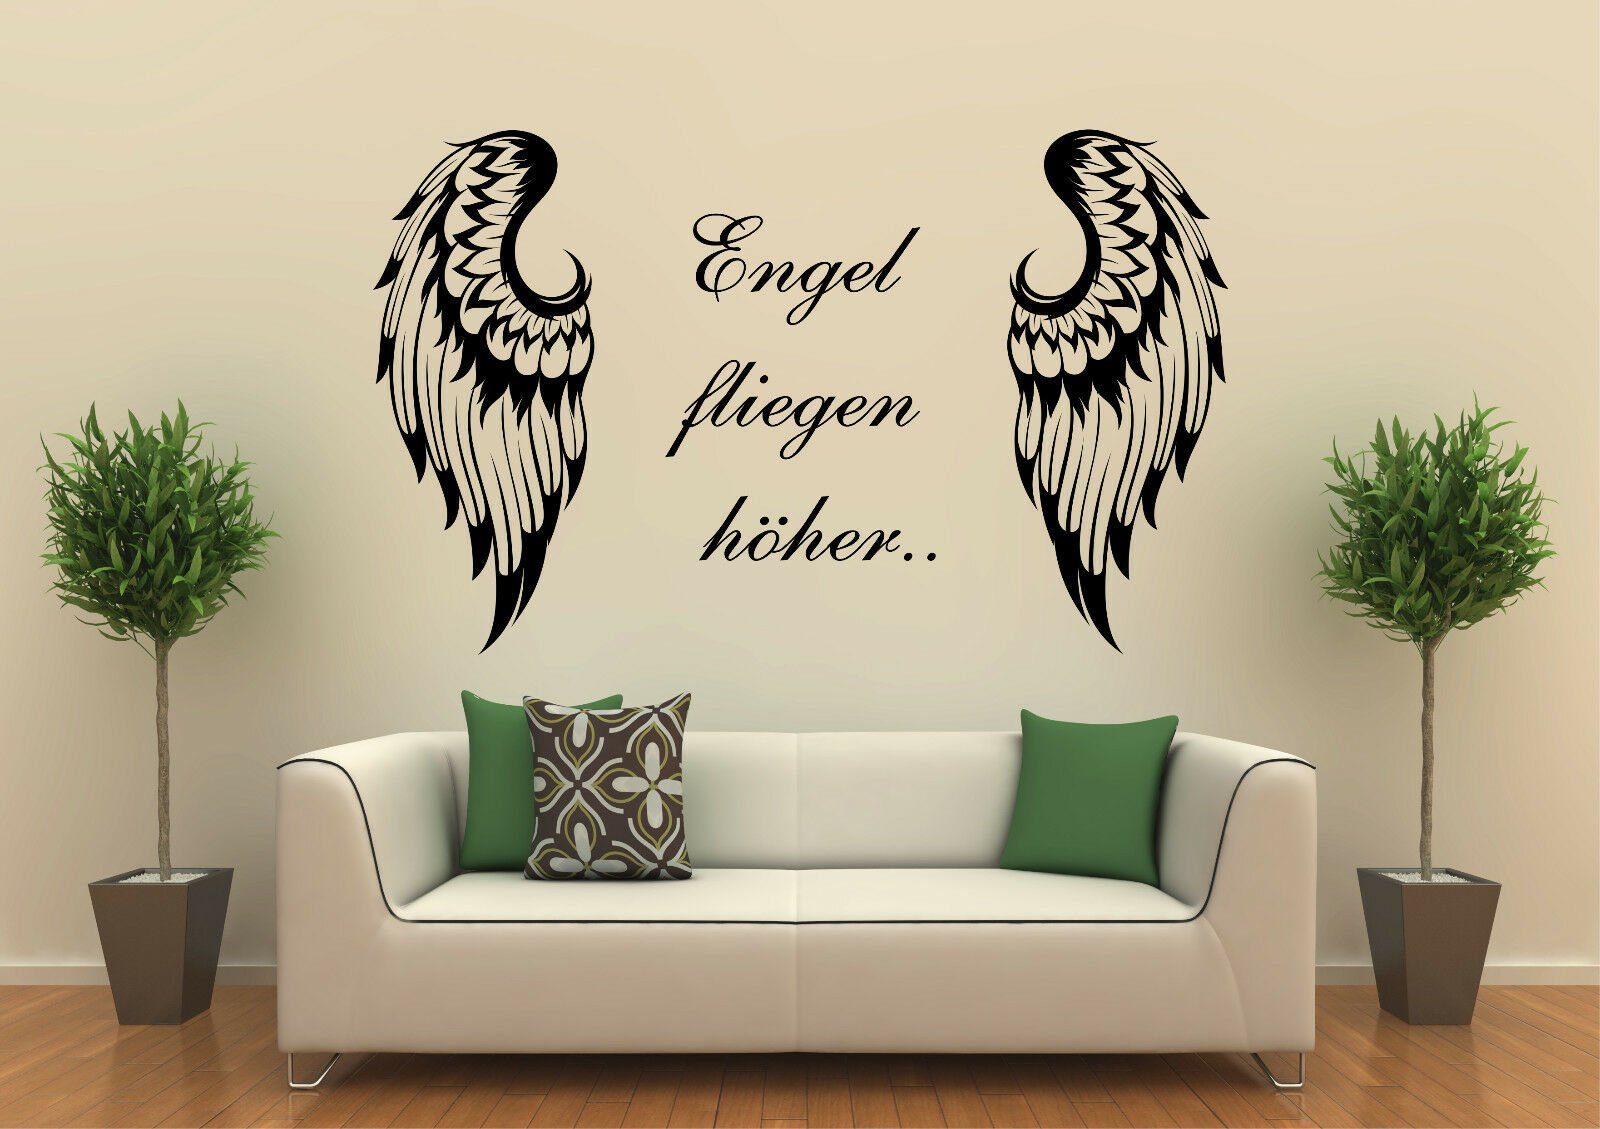 St), Spruch: (1 höher... Engel Wandtattoodesign ohne Wandtattoo mit Selbstklebend, Flügel fliegen Hintergrundfolie